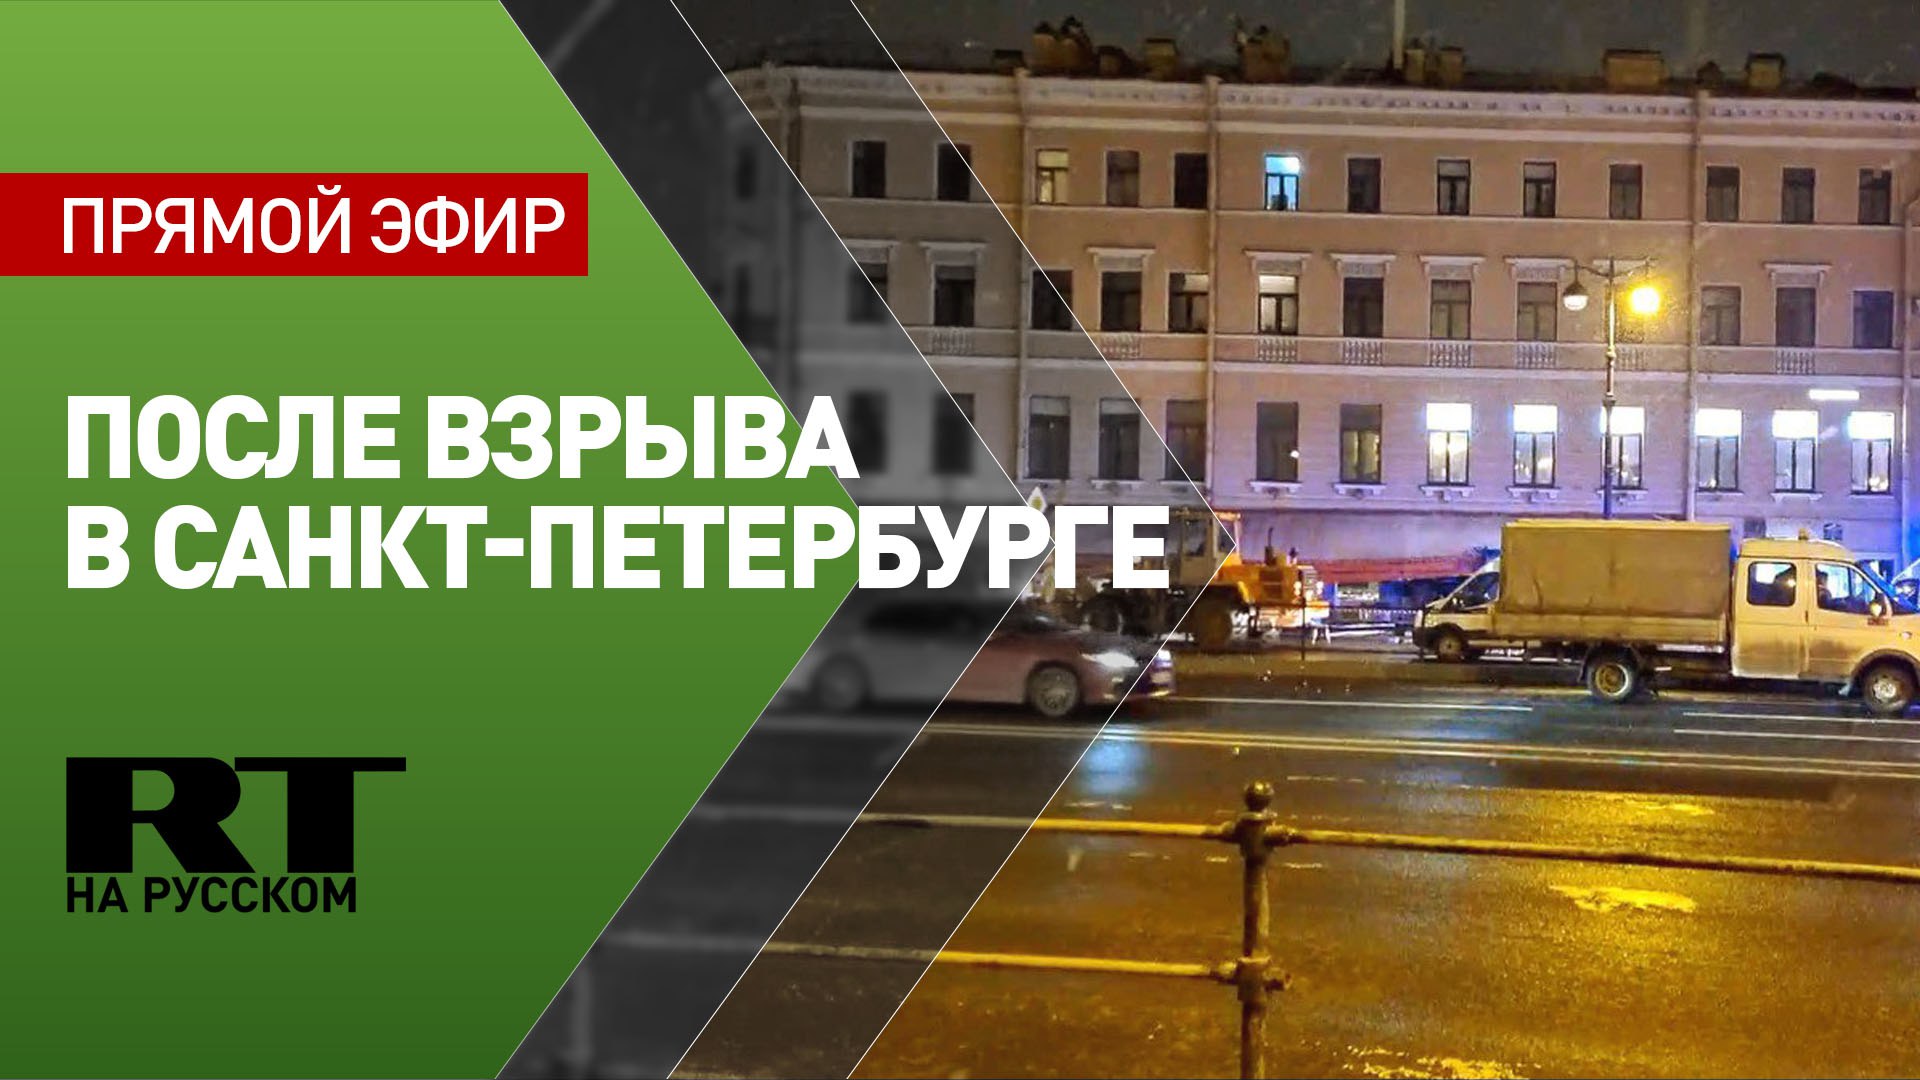 Обстановка на месте взрыва в кафе в Санкт-Петербурге — LIVE